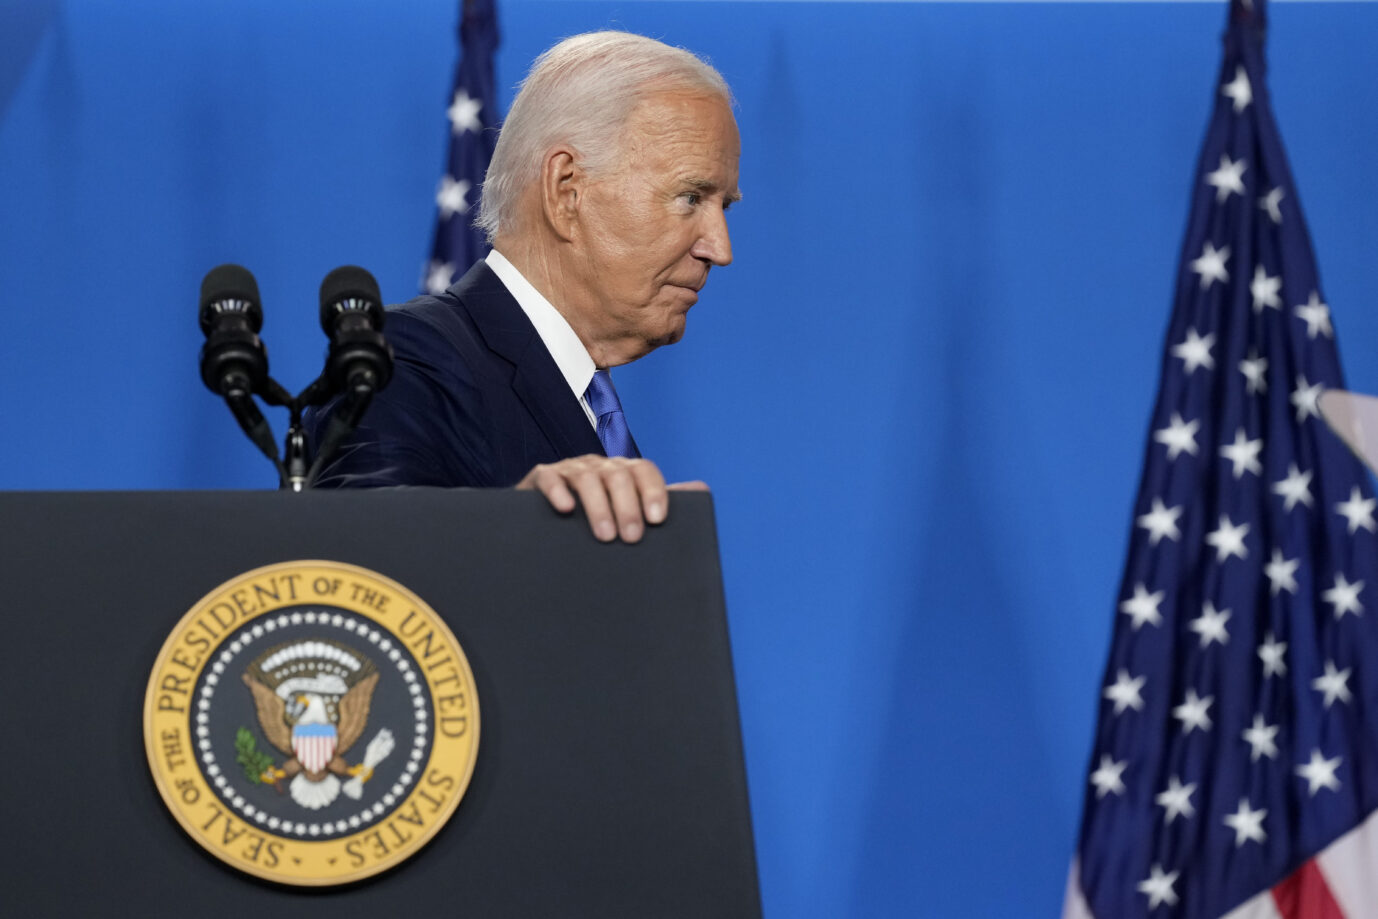 Kein Rückzug: US-Präsident Joe Biden verläßt das Podium nach seiner Pressekonferenz.